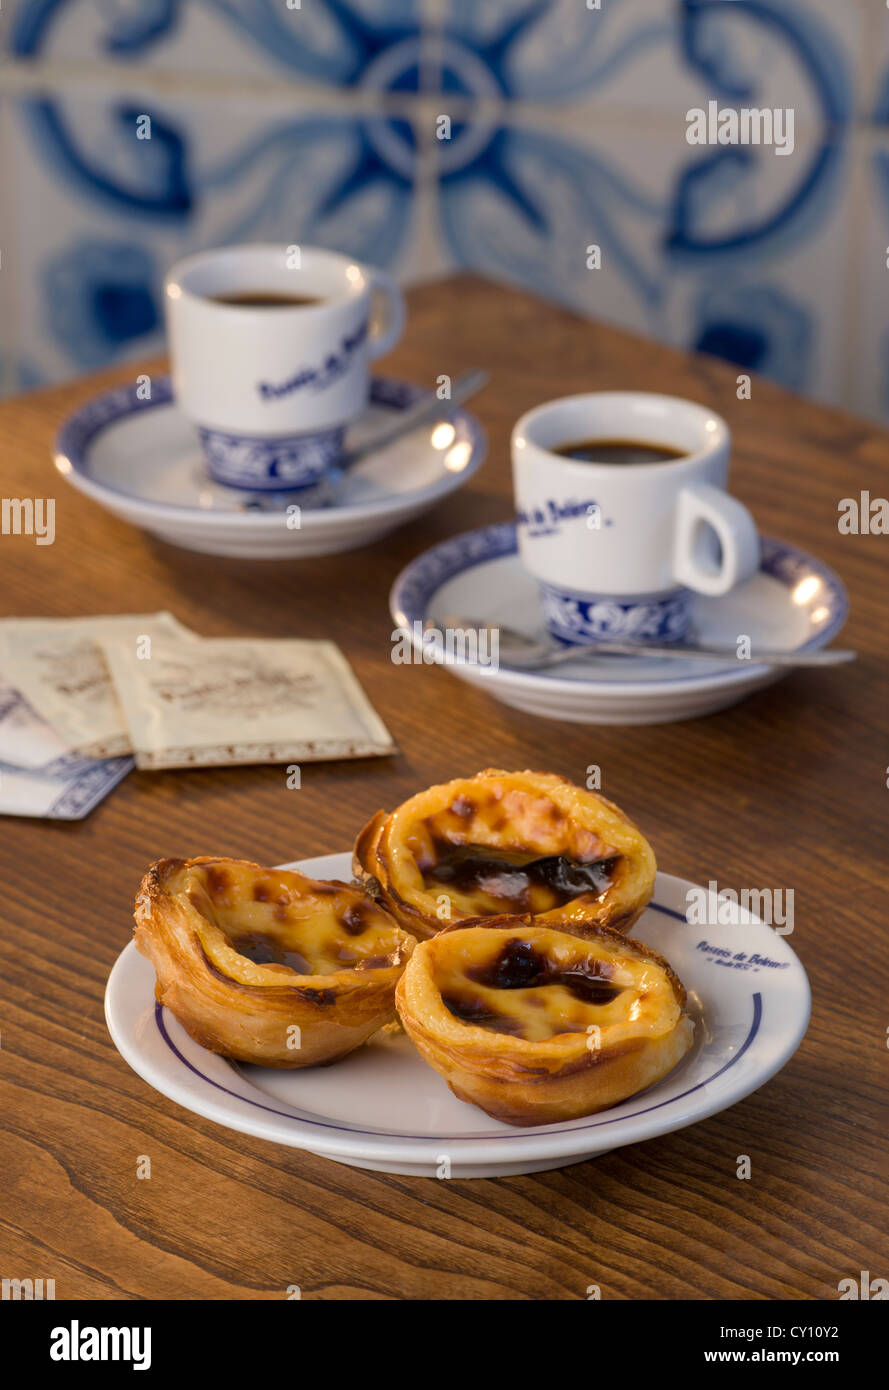 Pasteis de nata ou Pasteis de Belem, tartes à la crème, sur une table de café avec du café bica, Belém, Lisbonne, Portugal Banque D'Images